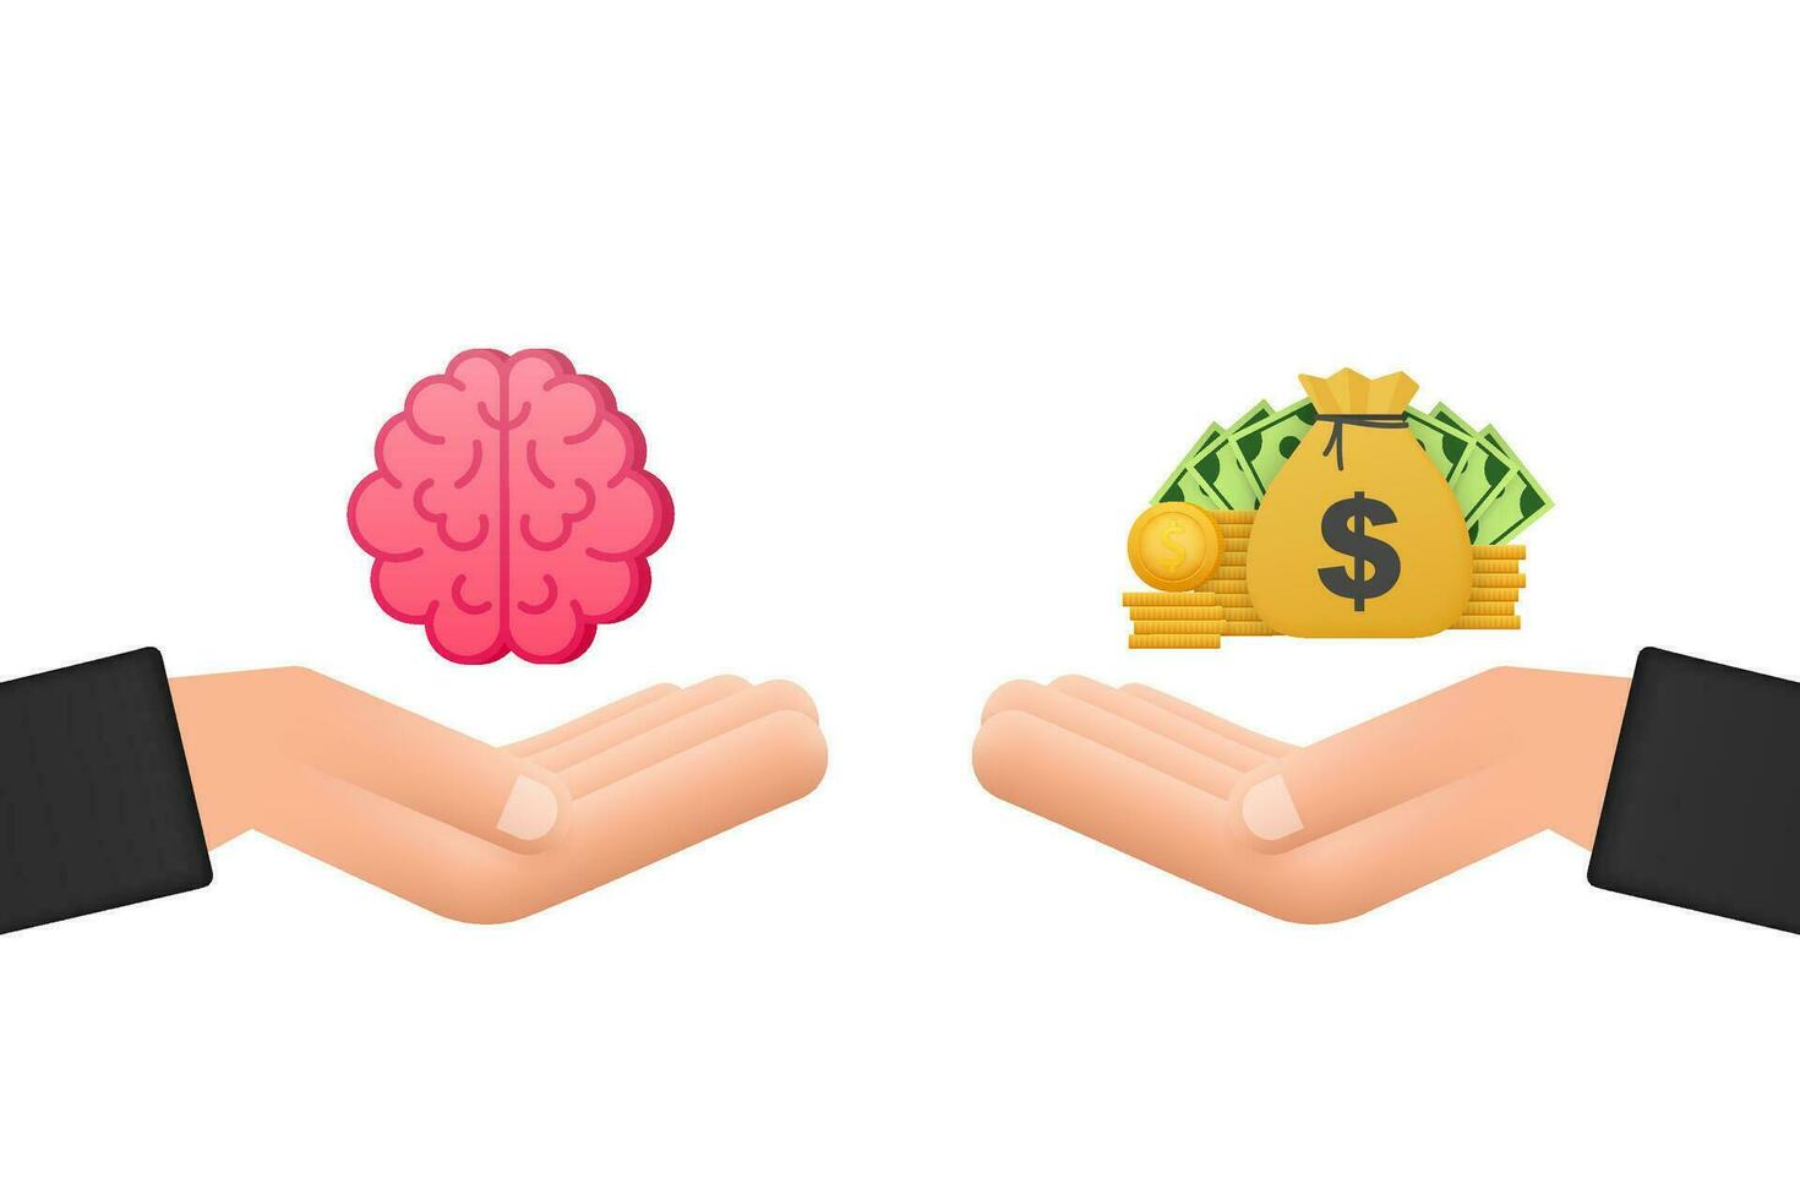 Υγεία εγκέφαλος: Πώς το εισόδημα μπορεί να διαμορφώσει την υγεία του εγκεφάλου;